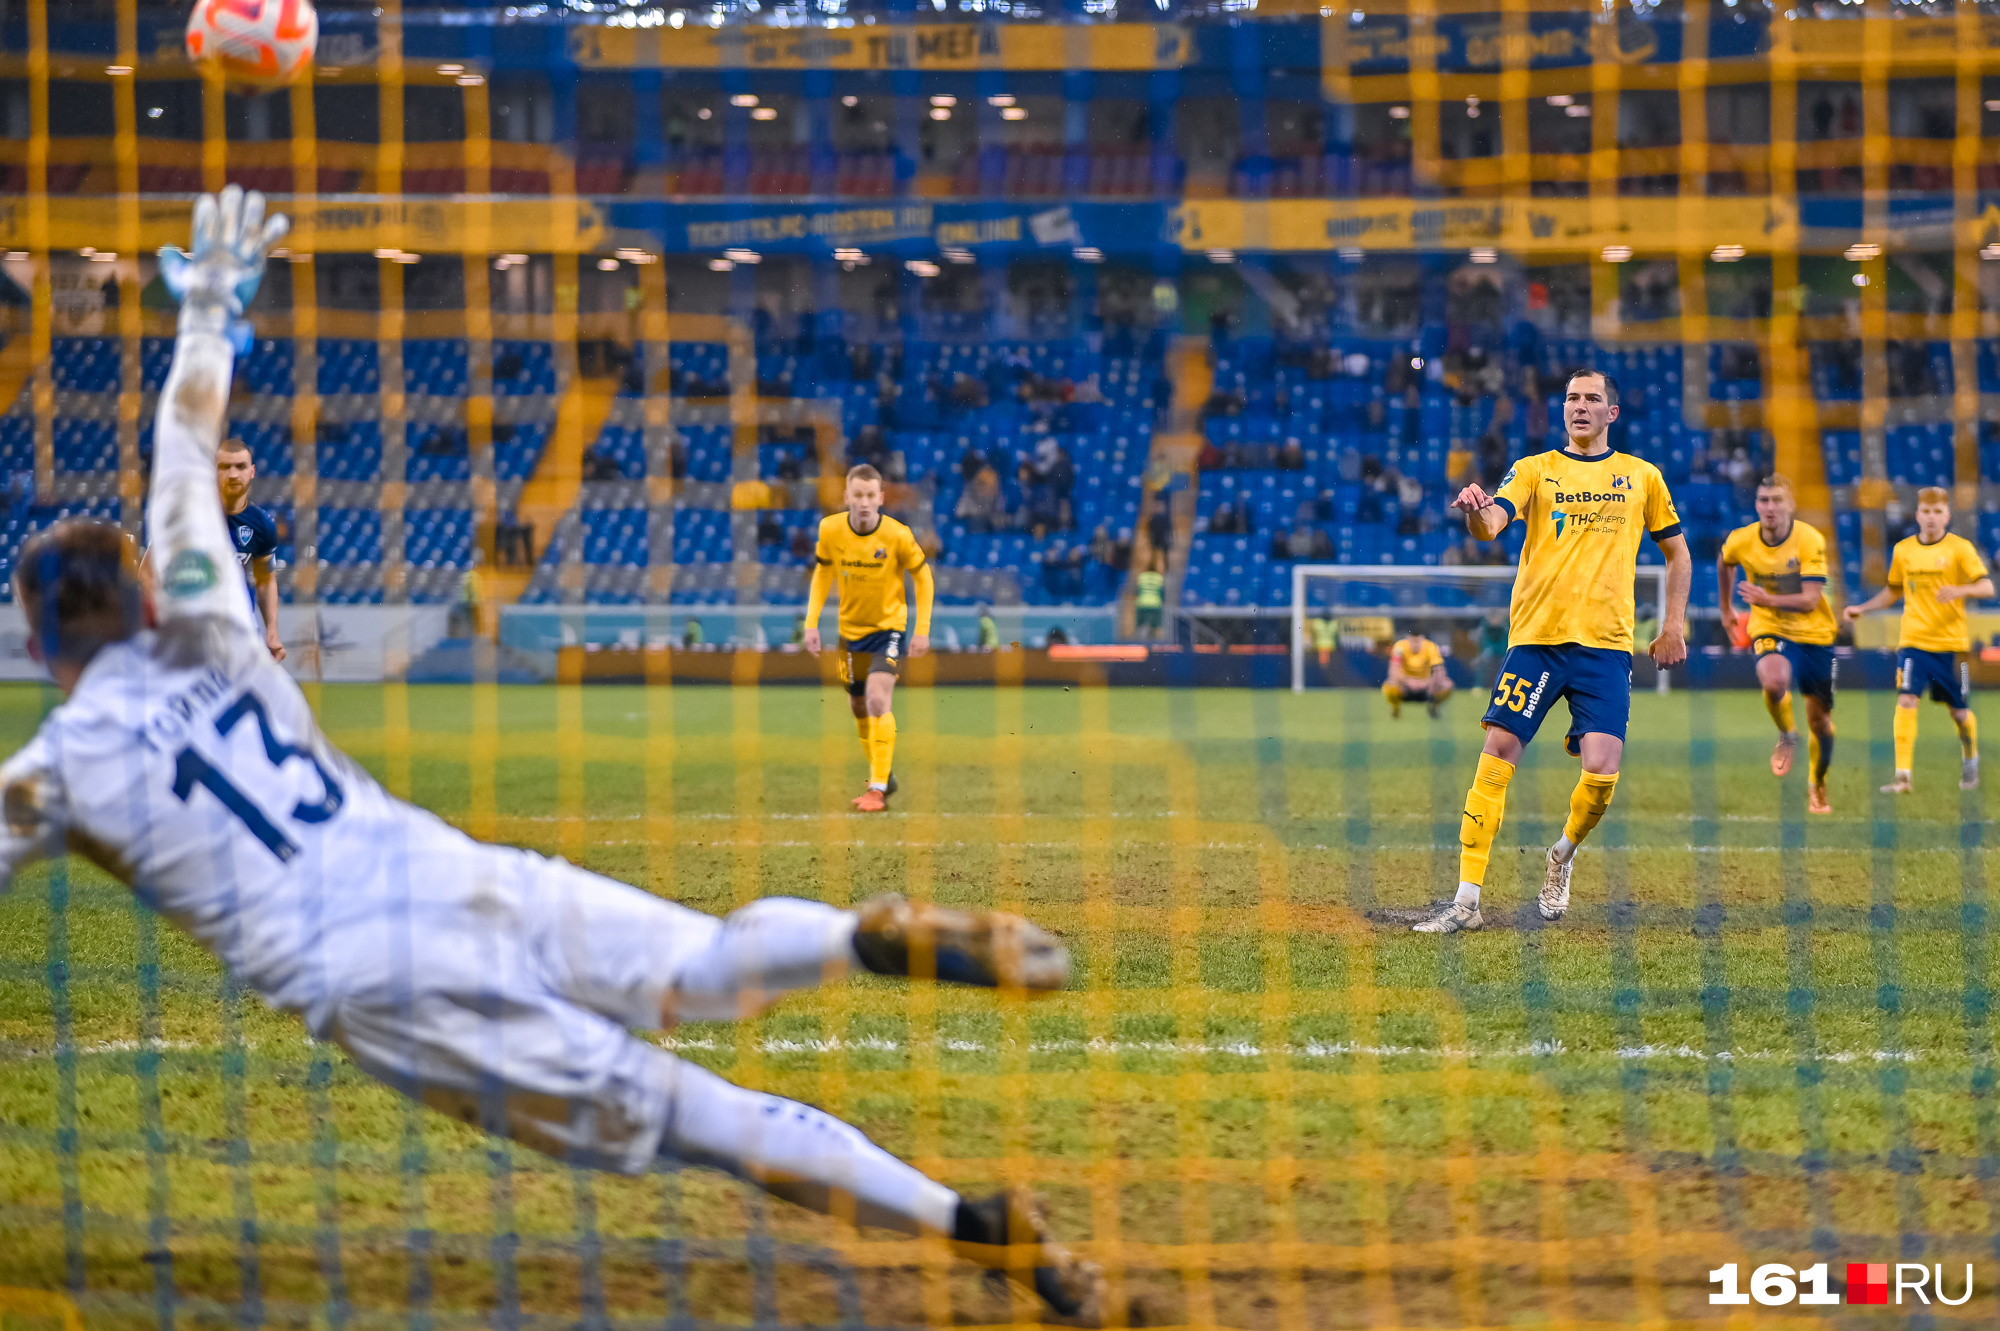 Уже в добавленное время «Ростов» получил право пробить пенальти. Максим Осипенко сделал счет 2:1